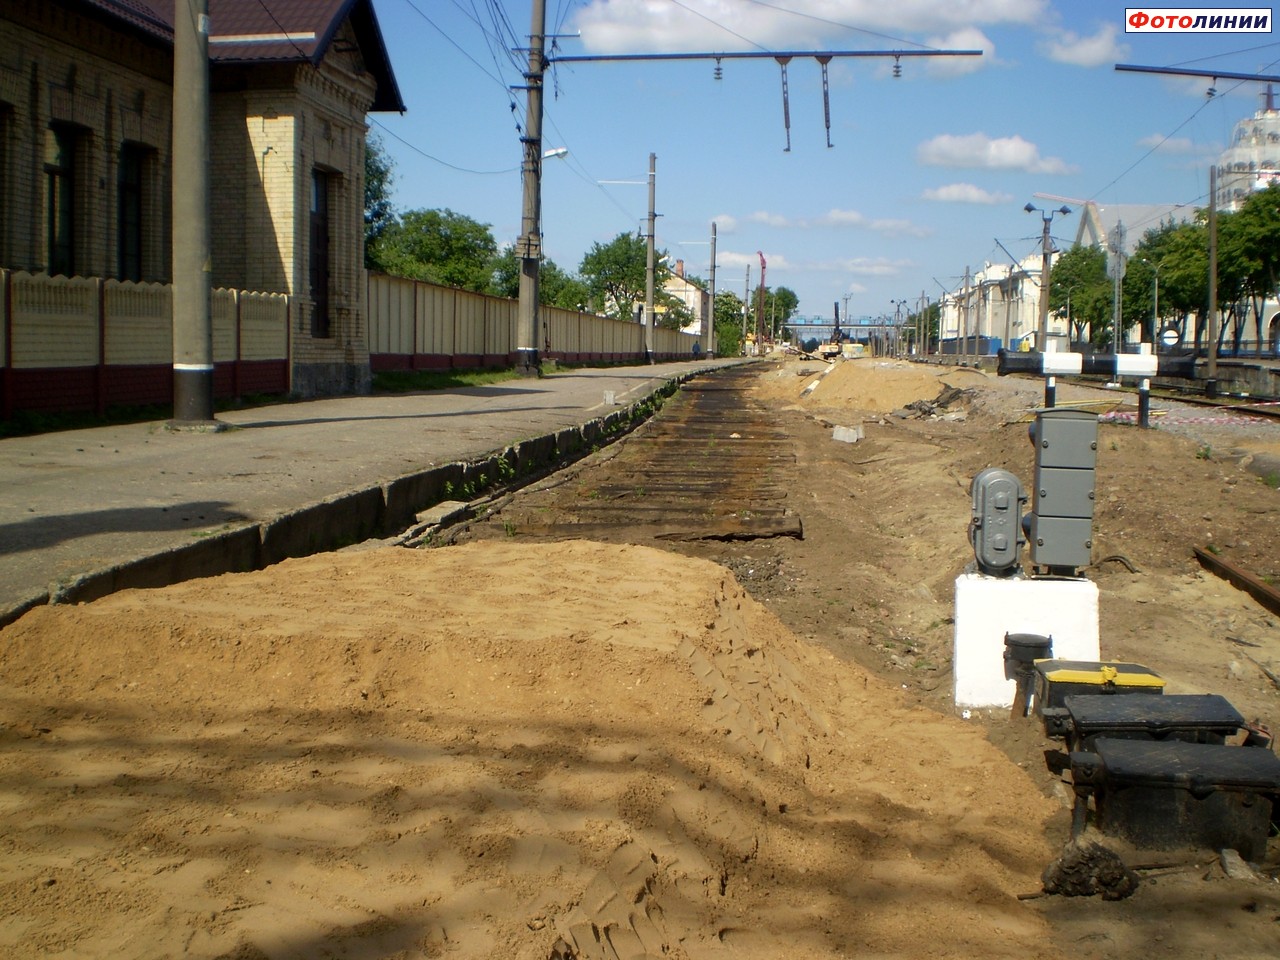 Реконструкция Варшавской стороны вокзала. Демонтирован четвёртый путь